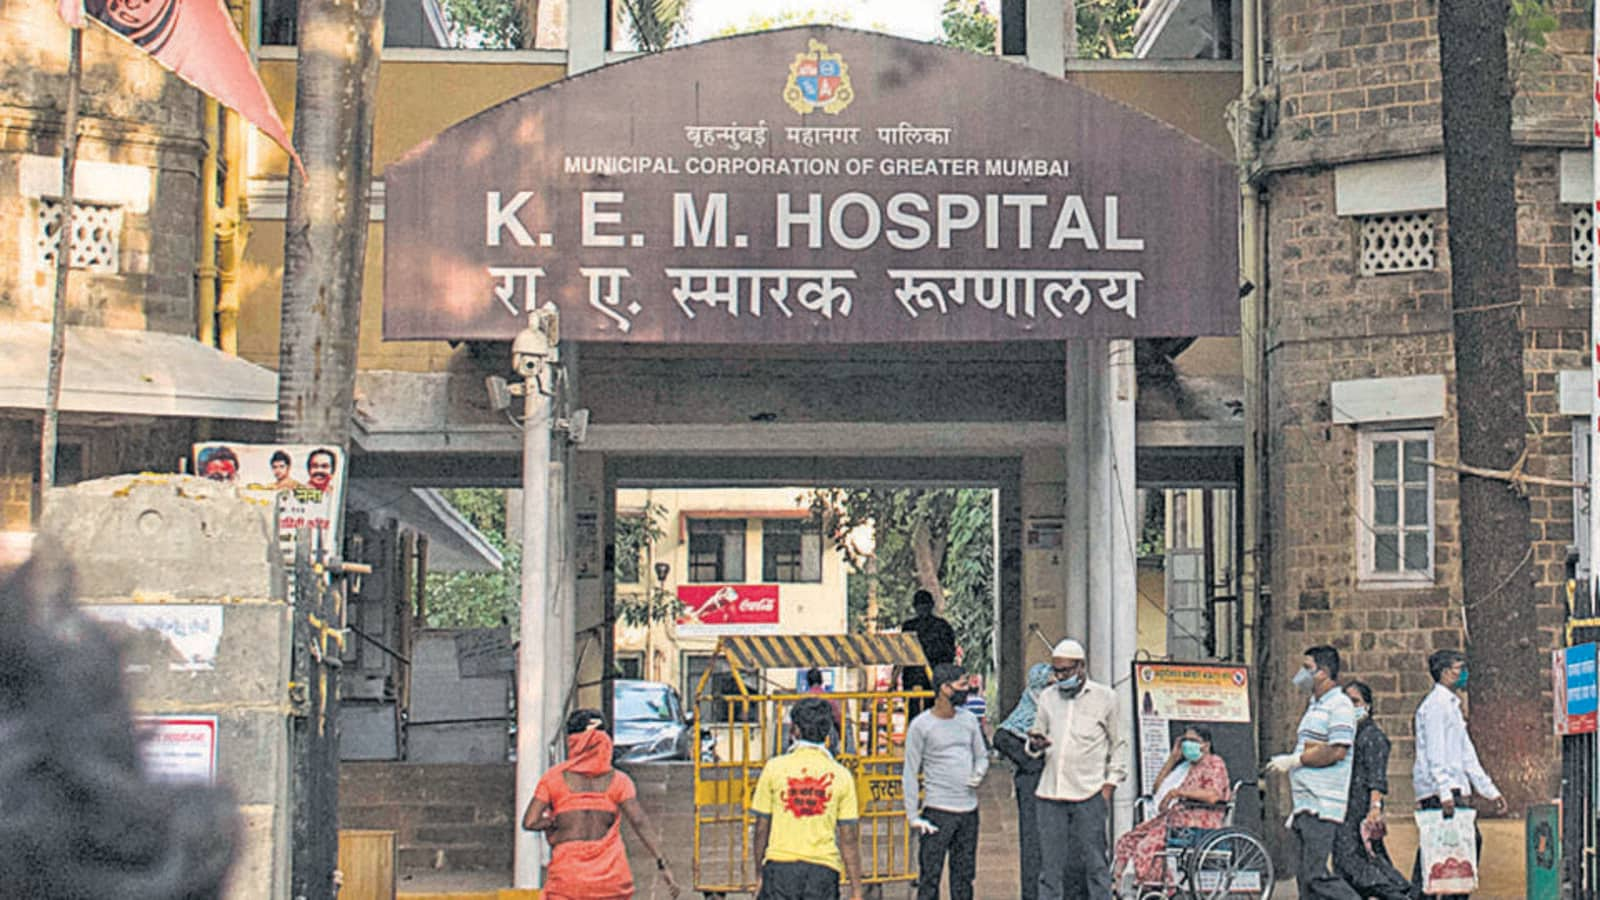 KEM Hospital